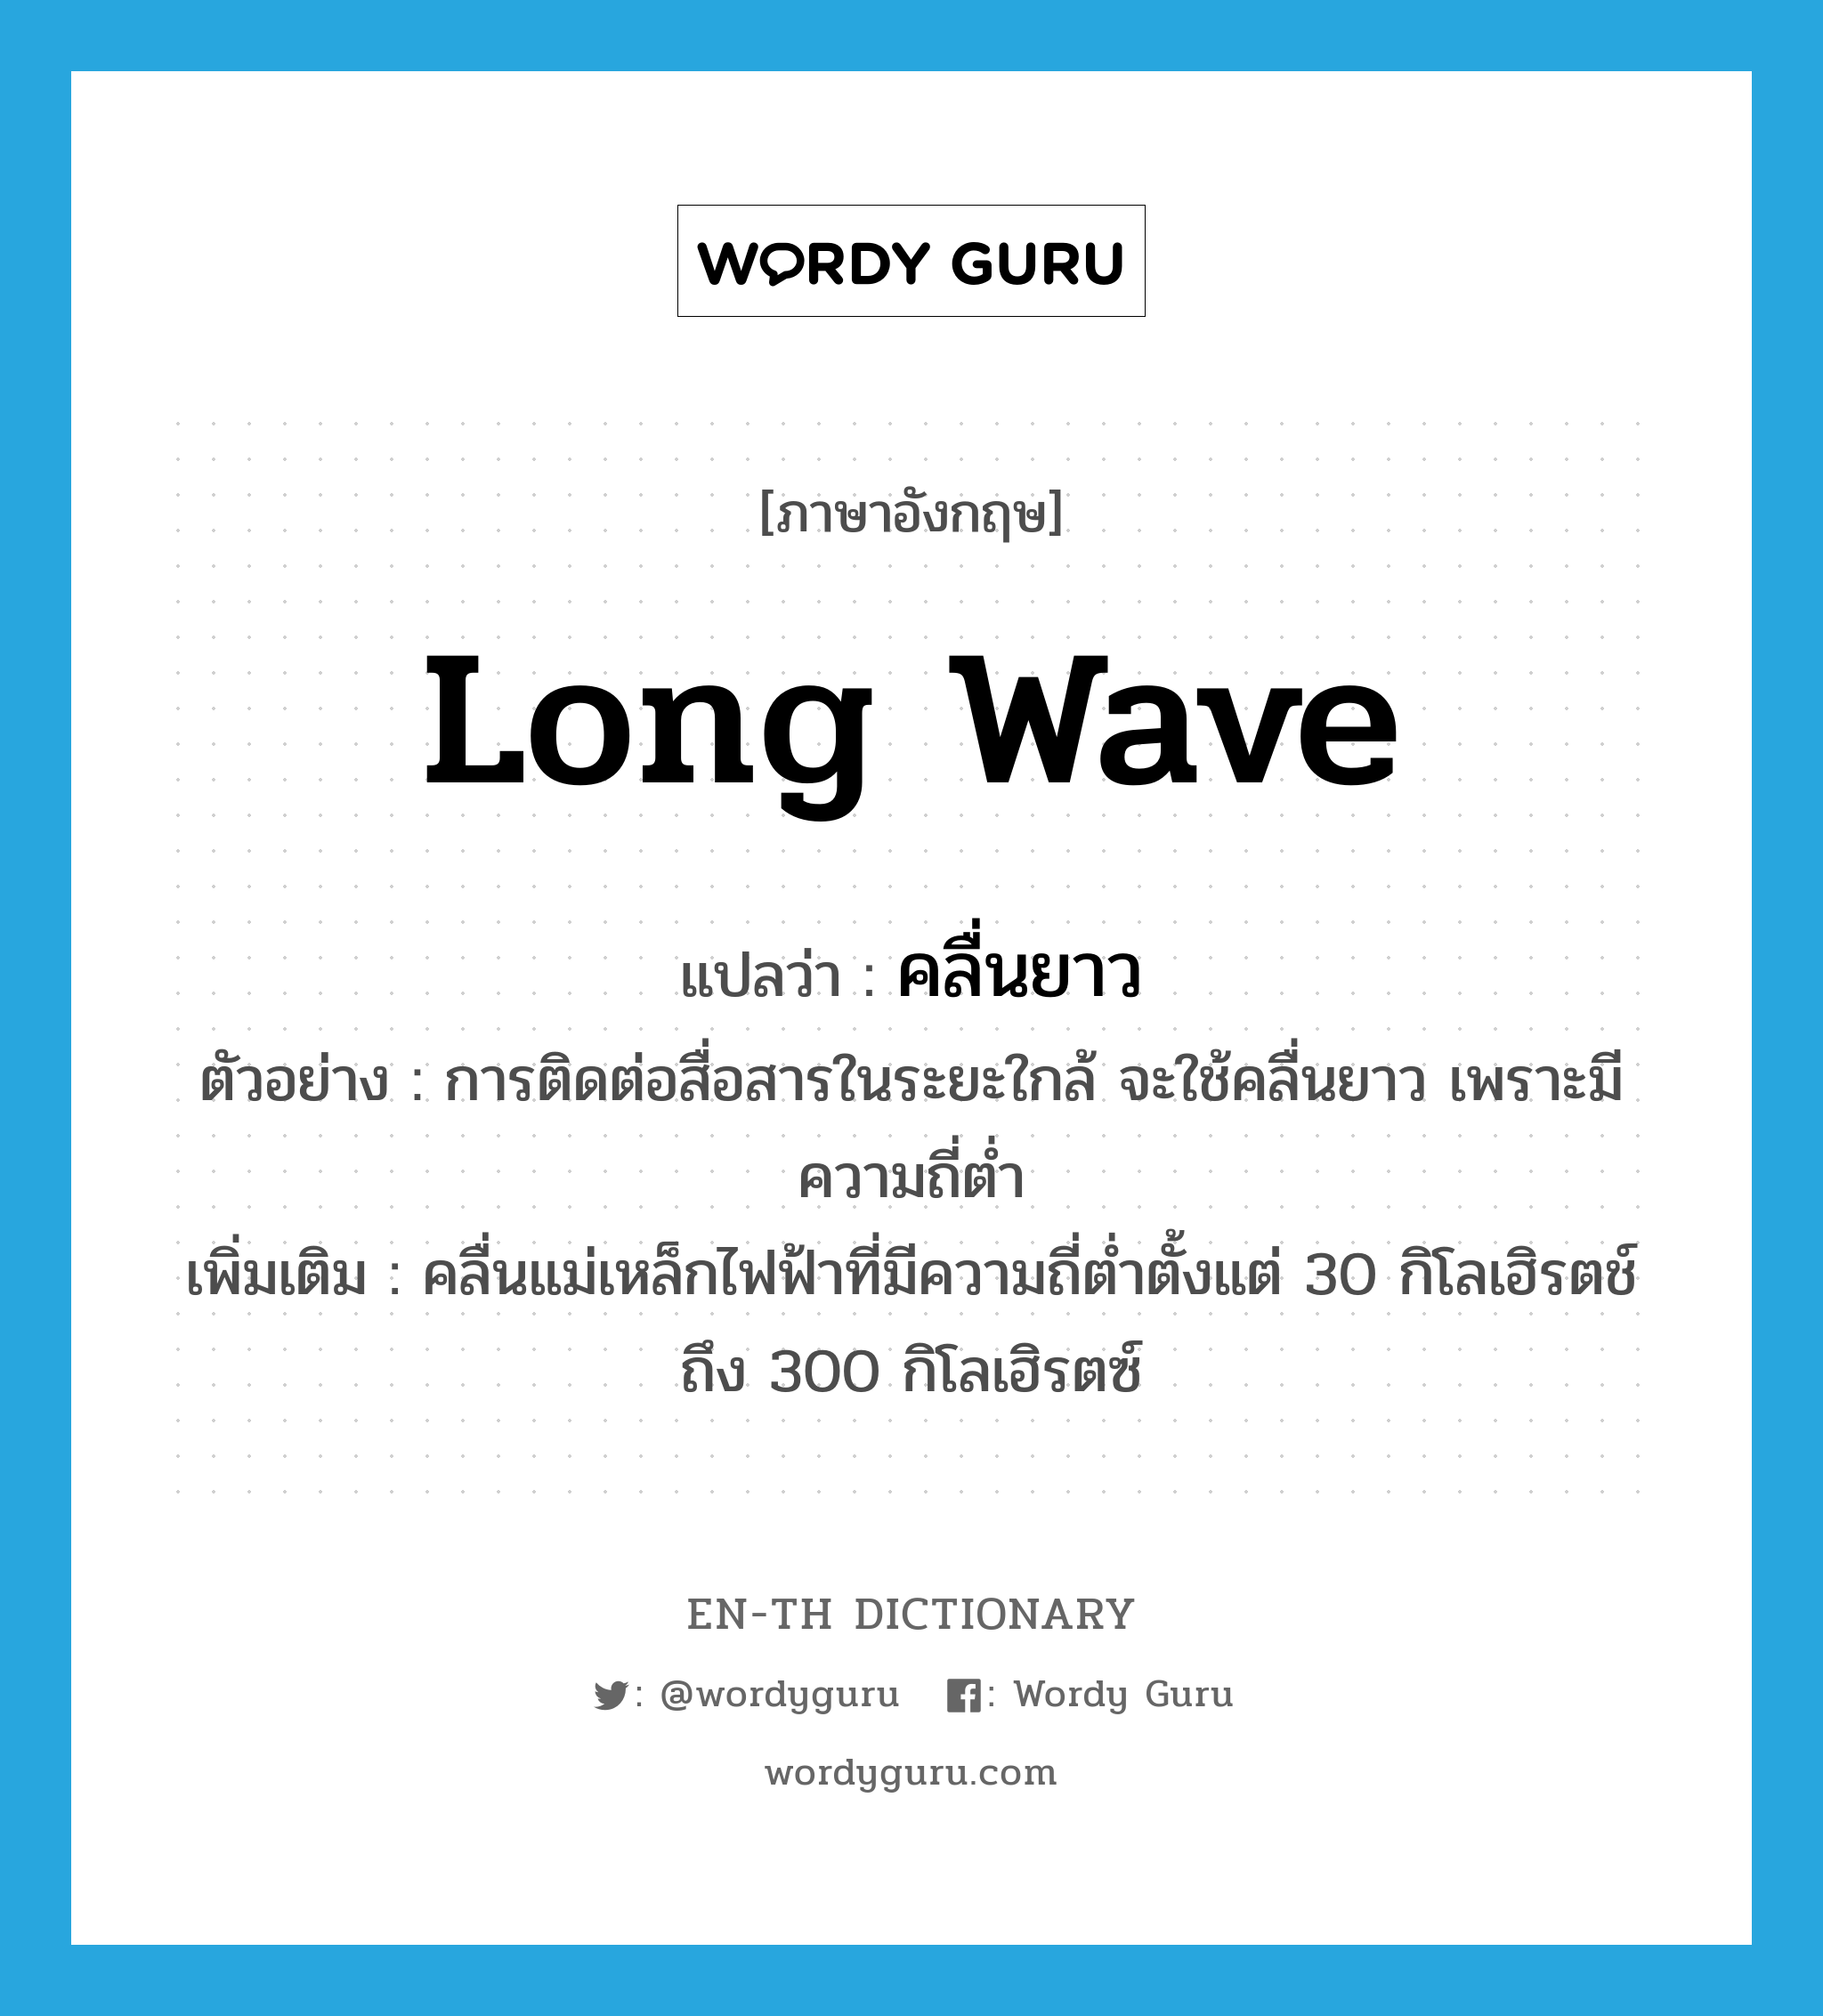 คลื่นยาว ภาษาอังกฤษ?, คำศัพท์ภาษาอังกฤษ คลื่นยาว แปลว่า long wave ประเภท N ตัวอย่าง การติดต่อสื่อสารในระยะใกล้ จะใช้คลื่นยาว เพราะมีความถี่ต่ำ เพิ่มเติม คลื่นแม่เหล็กไฟฟ้าที่มีความถี่ต่ำตั้งแต่ 30 กิโลเฮิรตช์ถึง 300 กิโลเฮิรตซ์ หมวด N